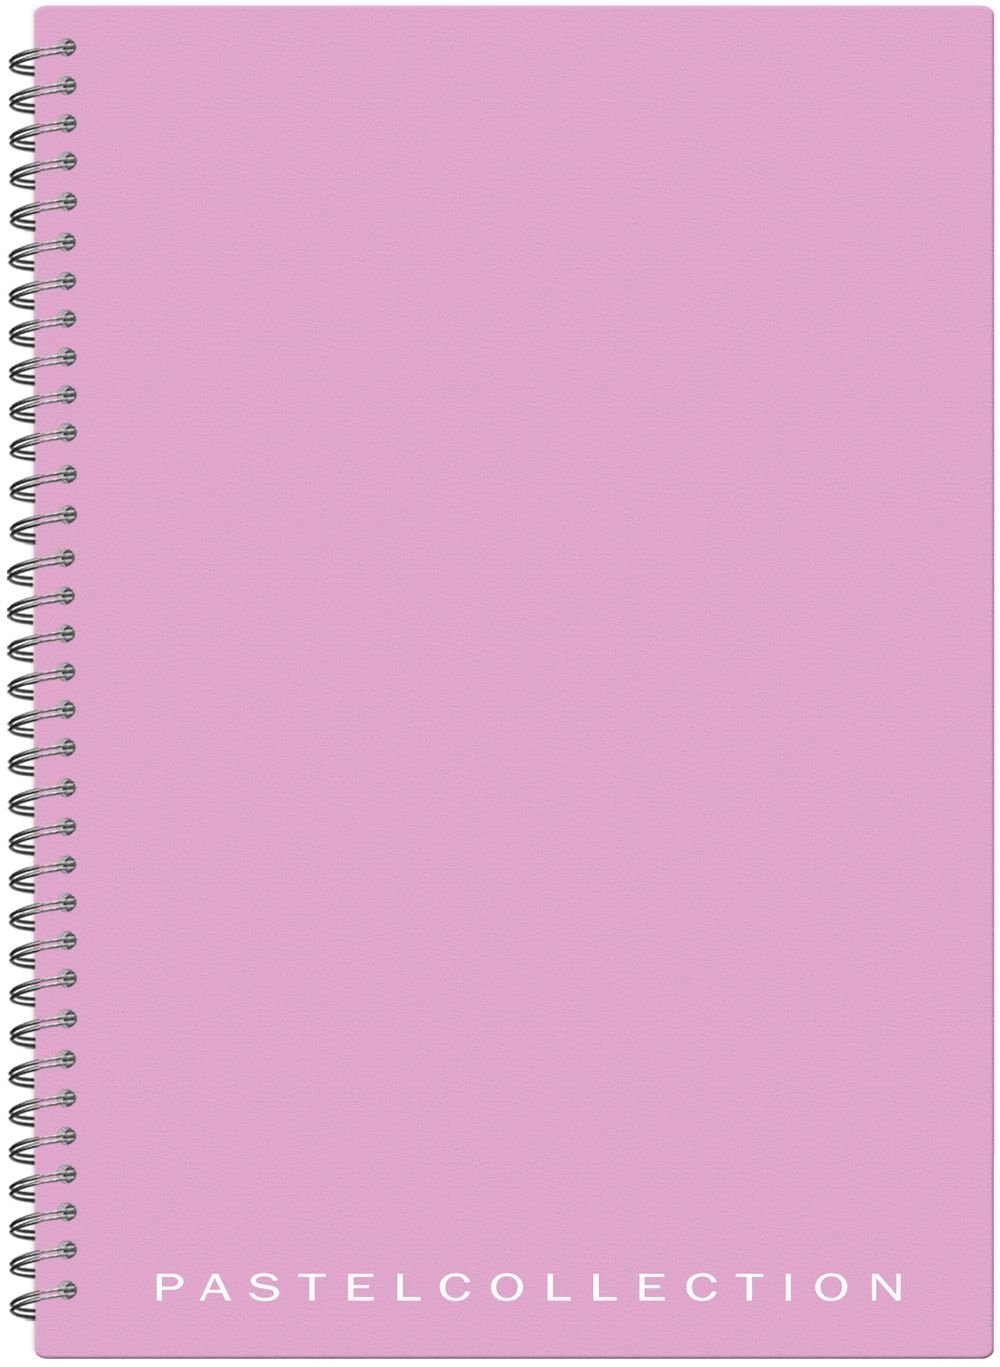 Бизнес-тетрадь Pastel Collection Pink/Purple имеет пластиковую обложку пастельно розового/фиолетового цвета толщиной 0,5 мм. Внутренний блок на металлическом гребне включает в себя 96 листов офсетной бумаги плотностью 80 г/м2 в клетку. Оснащен титульным листом с персональными данными. Формат А4. Скругленные края увеличивают срок службы, позволяют бережно переносить тетрадь в сумке, рюкзаке или портфеле.